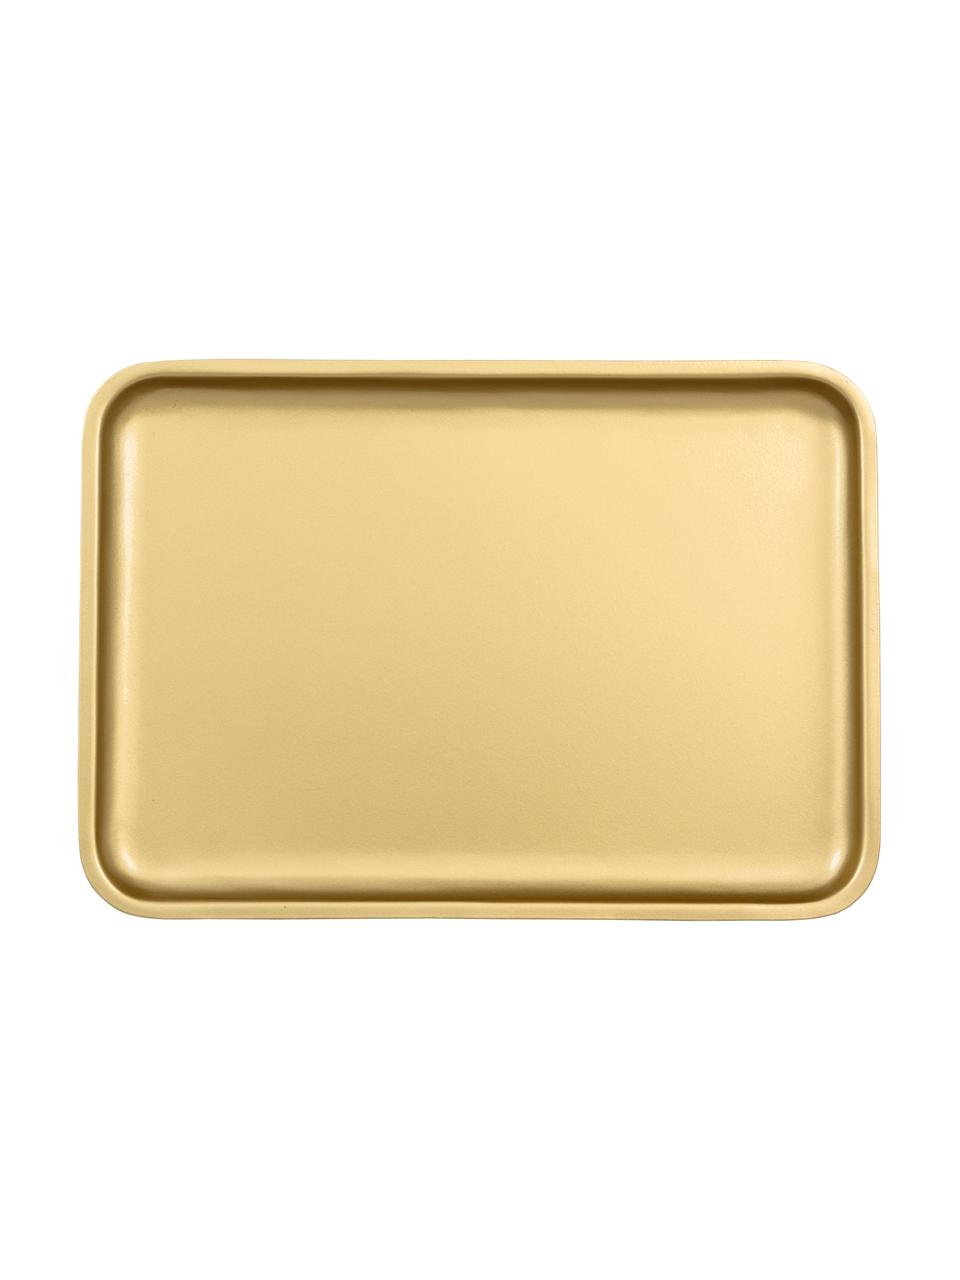 Tablett Good Morning, Metall, beschichtet, Goldfarben, B 34 x T 23 cm